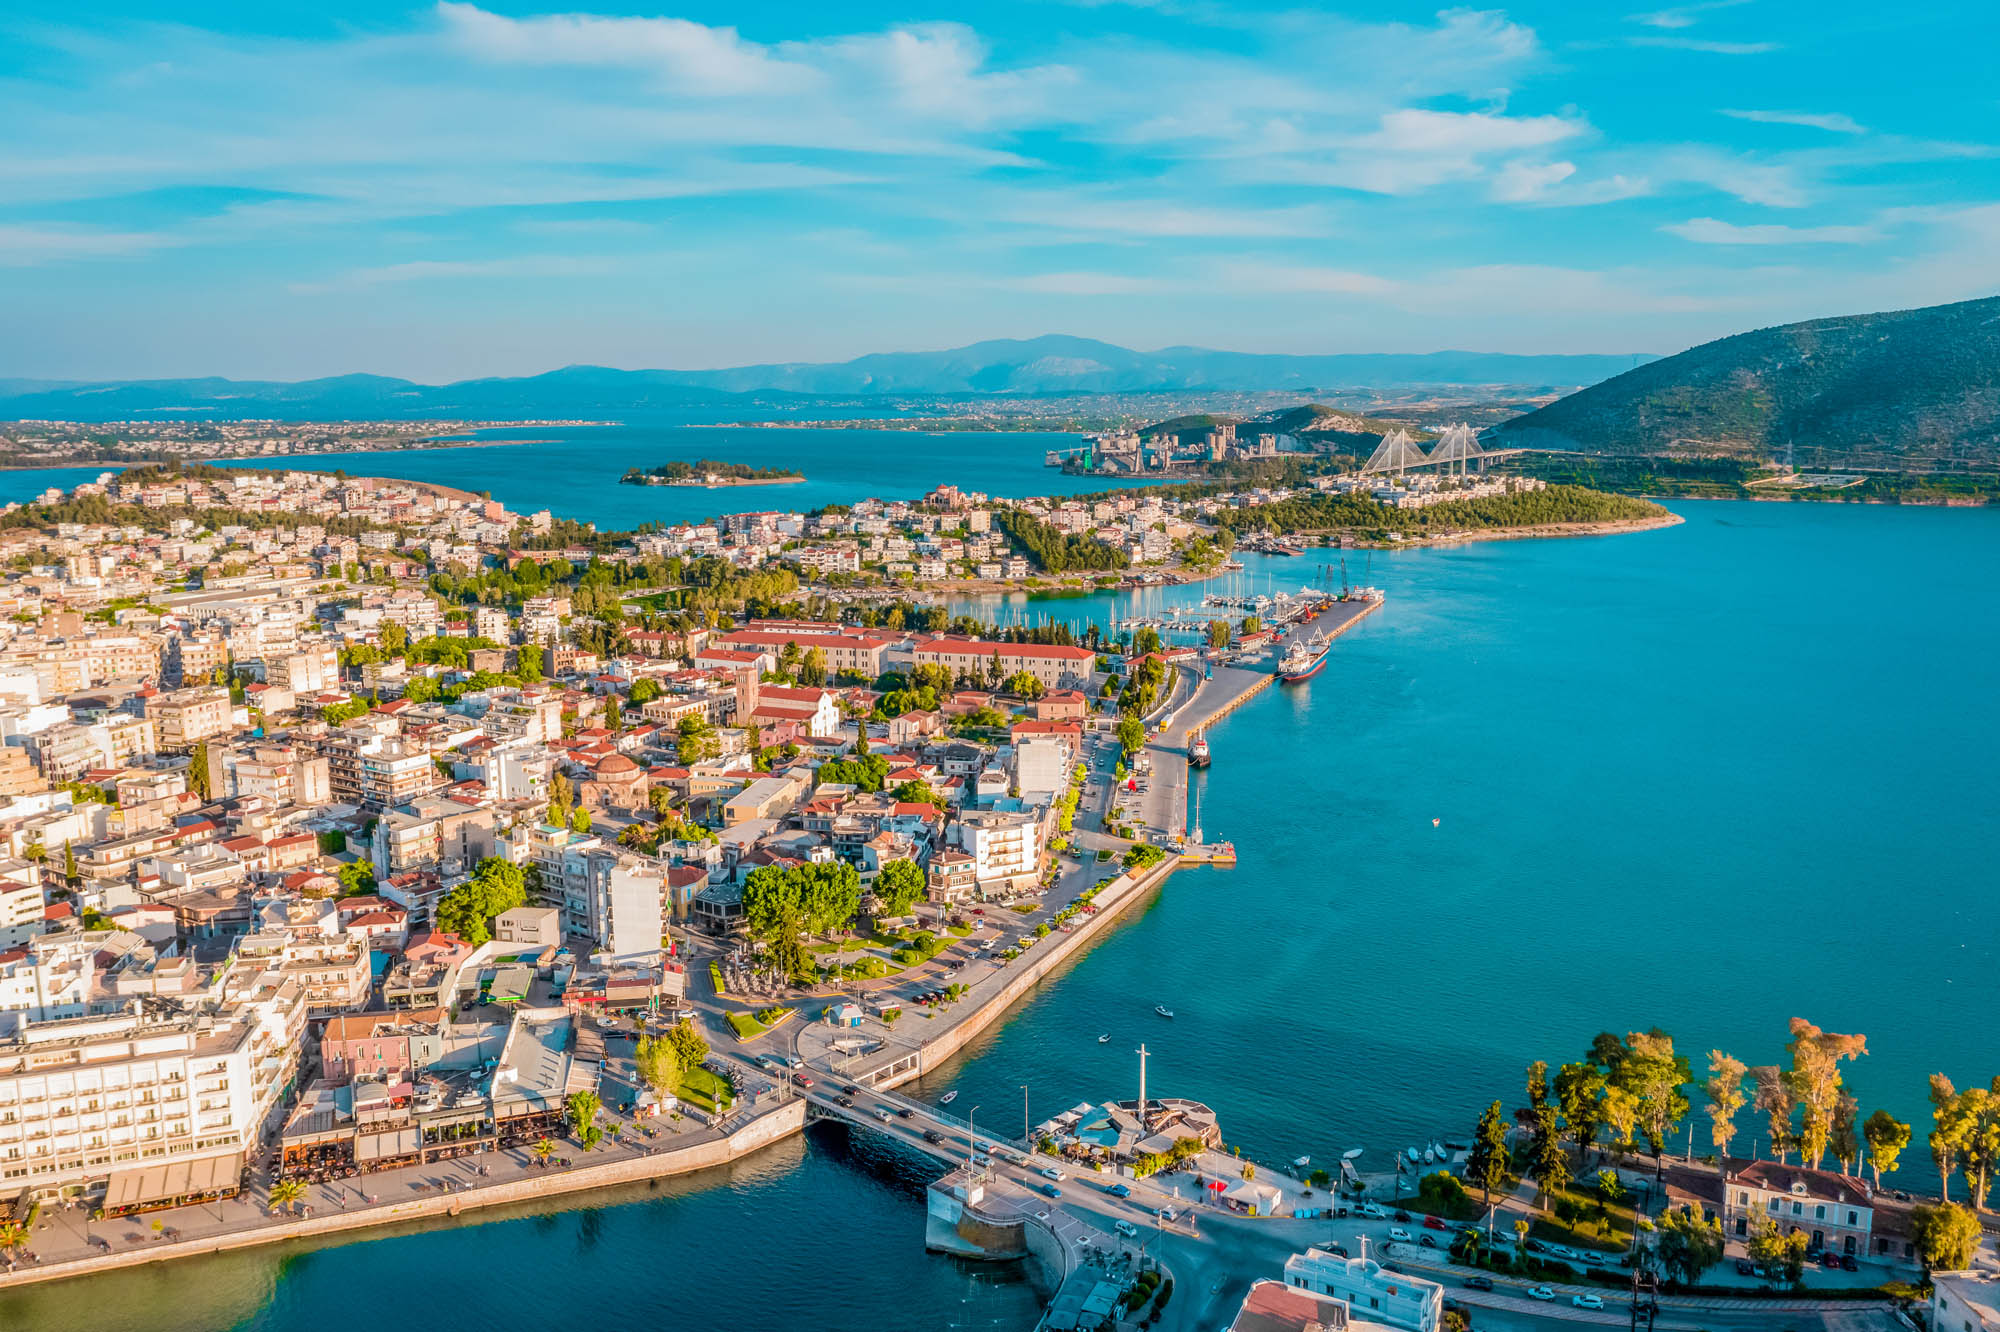 Widok na stolicę wyspy Evia, Chalkida z lotu ptaka, morze i jasne budynki w słońcu